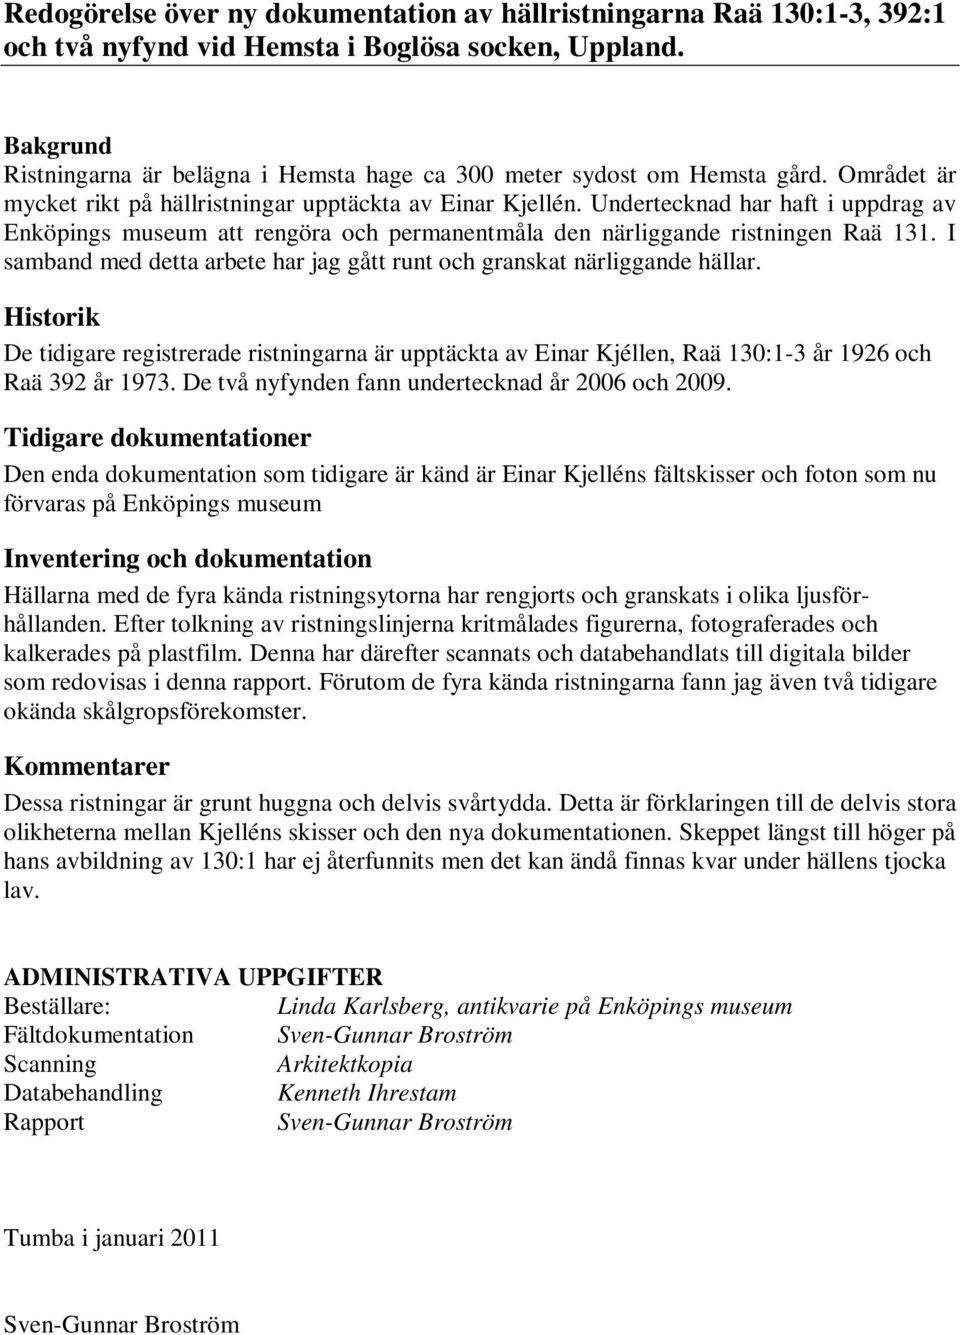 Undertecknad har haft i uppdrag av Enköpings museum att rengöra och permanentmåla den närliggande ristningen Raä 131. I samband med detta arbete har jag gått runt och granskat närliggande hällar.